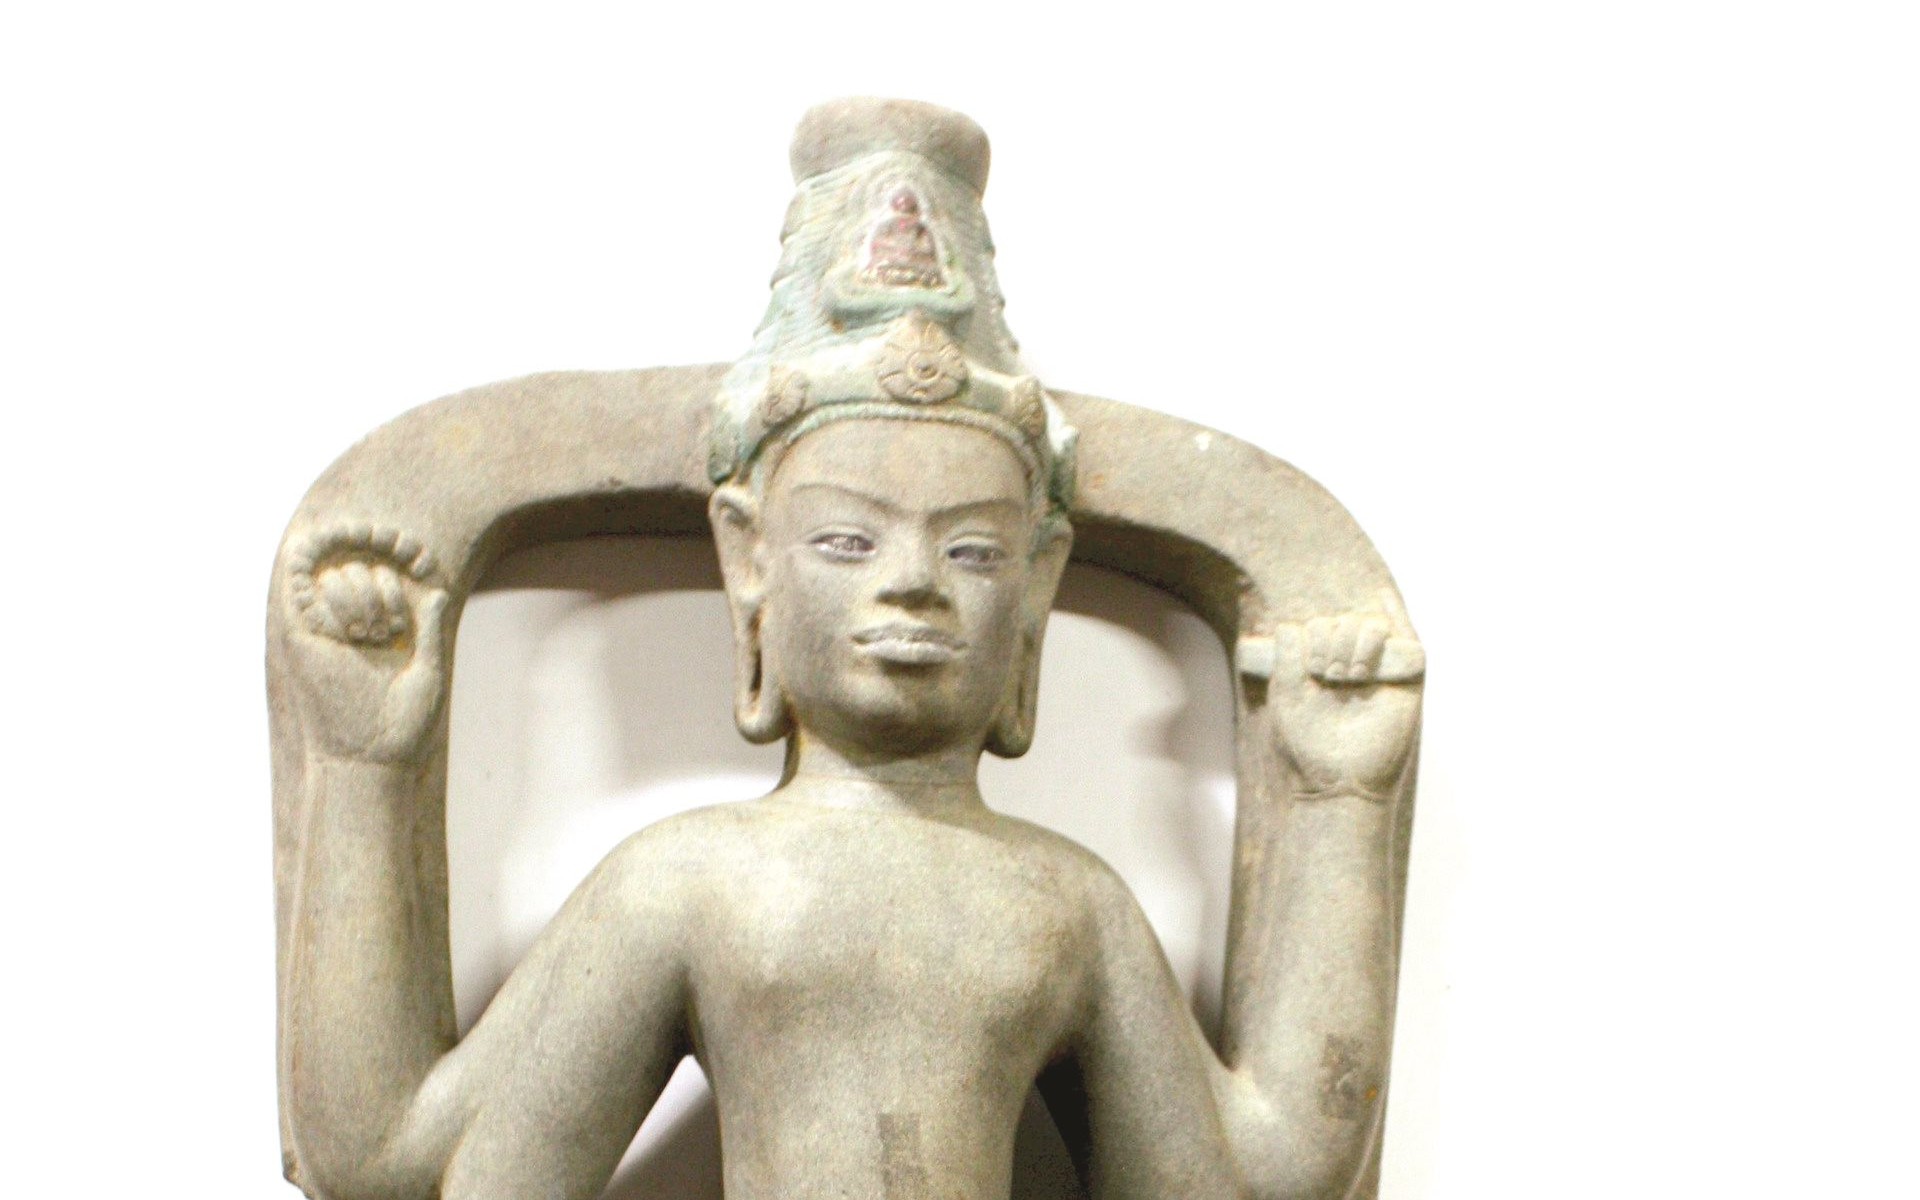 Tình cờ phát lộ tượng Champa cổ cách đây 22 năm ở một thôn của Bình Thuận, nay là báu vật hiếm có